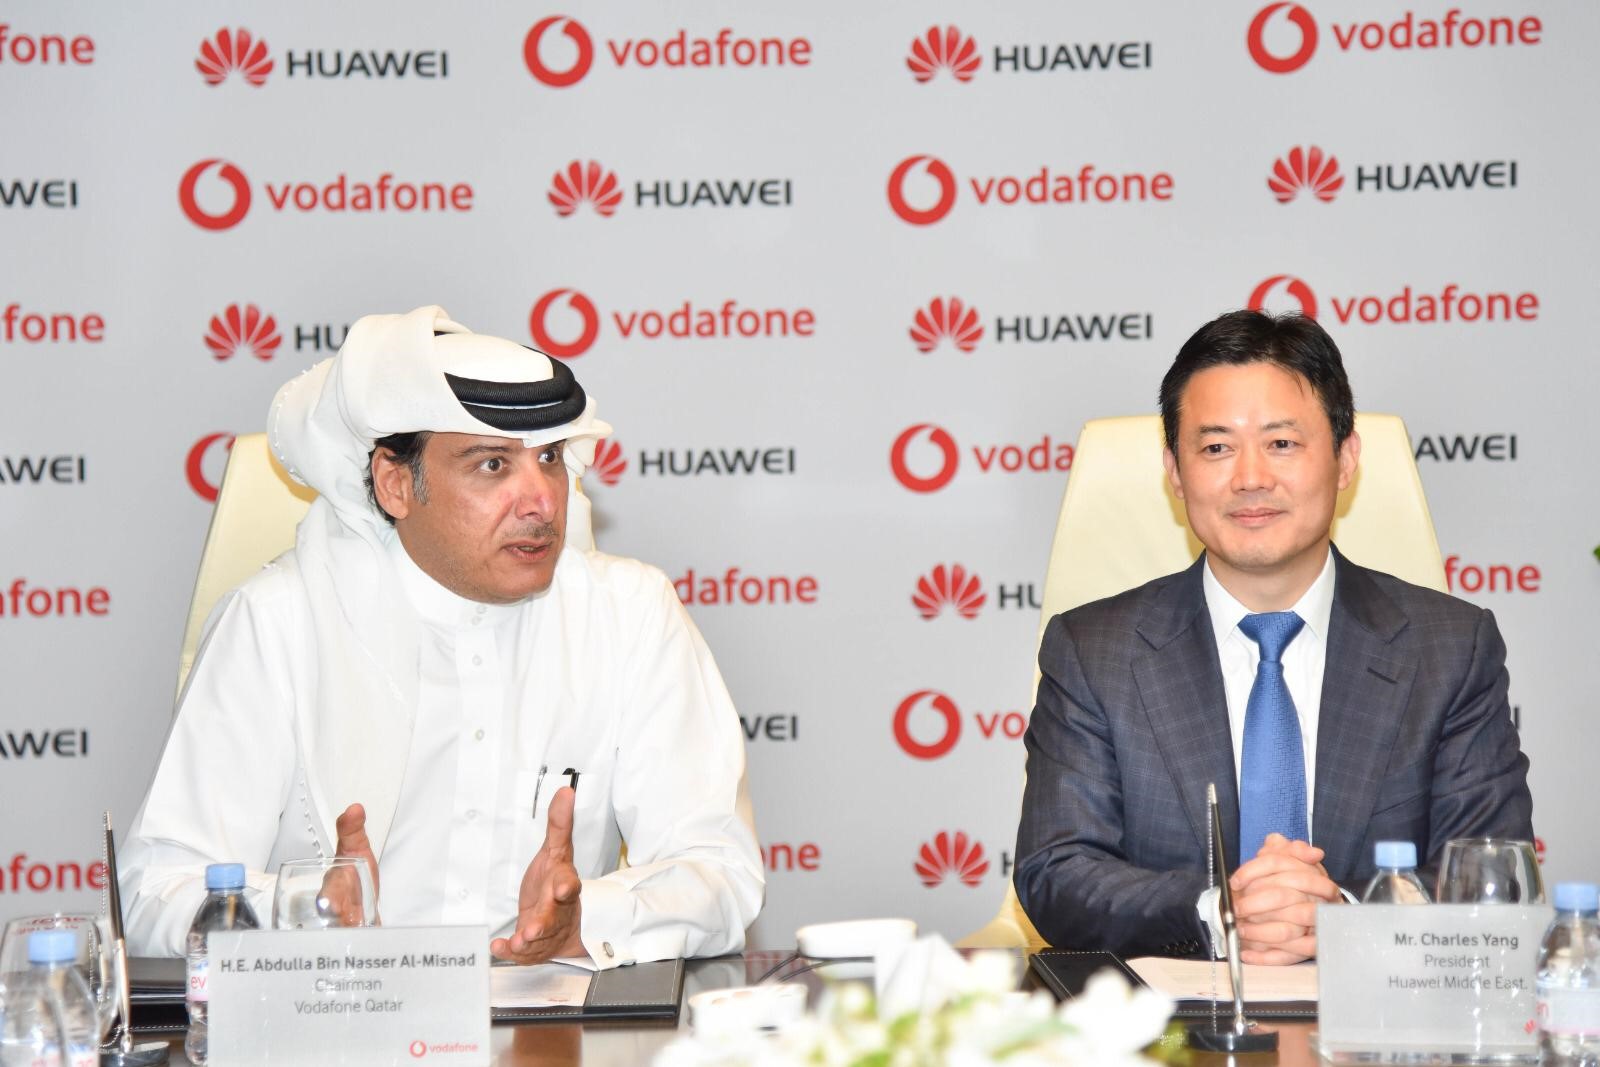 فودافون قطر تواصل الاستثمار في تطوير شبكتها الخلوية   عبر اتفاقية استراتيجية مع هواوي